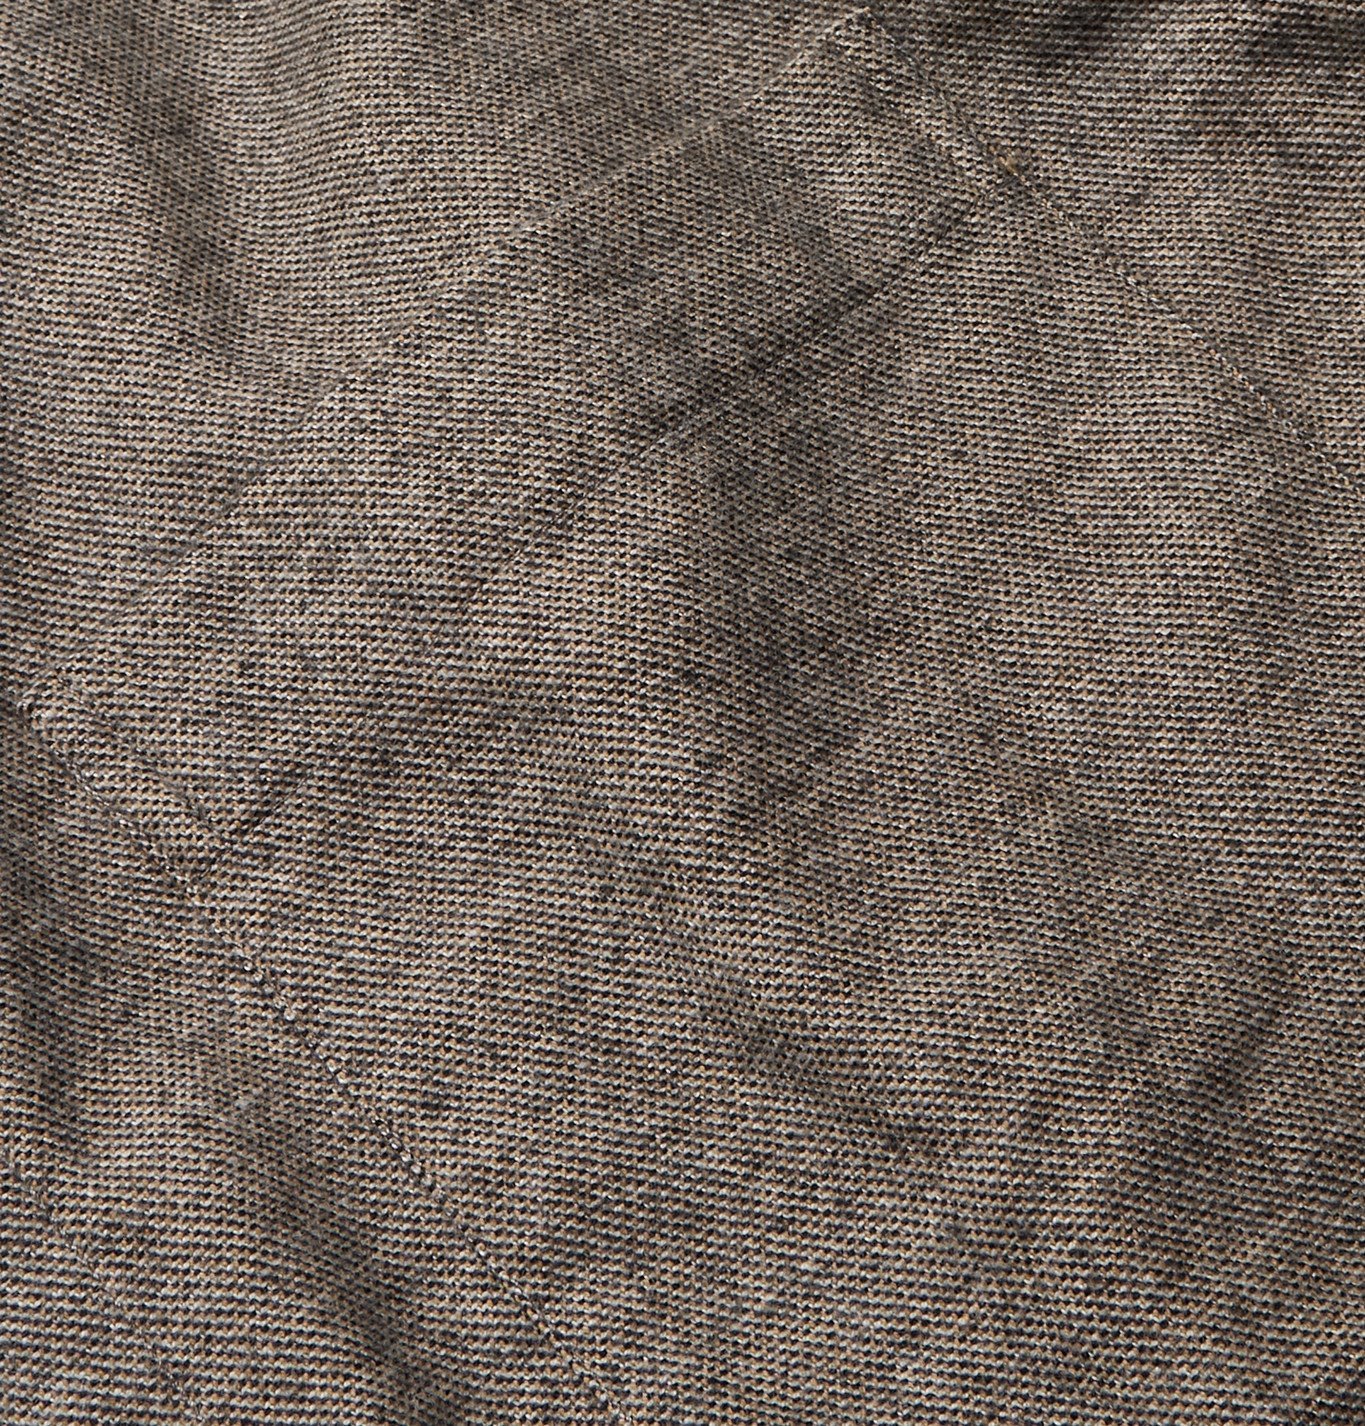 OLIVER SPENCER - Eltham Mélange Brushed Organic Cotton-Flannel Overshirt - Neutrals